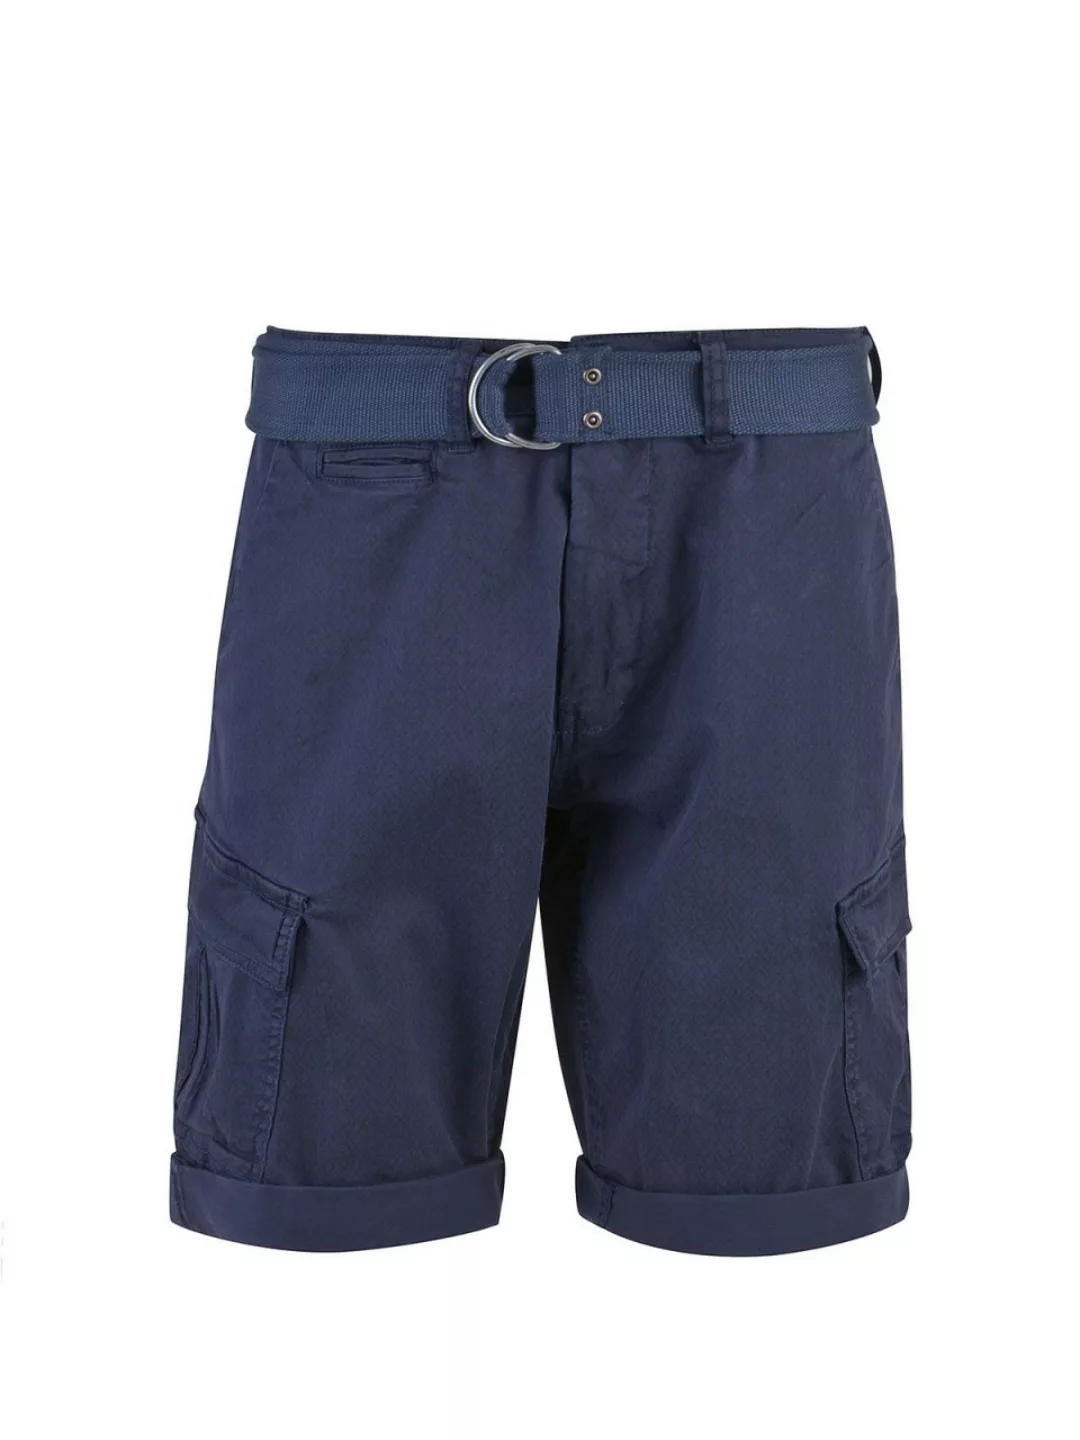 MILANO ITALY Herren Bermuda Shorts, dunkelblau günstig online kaufen